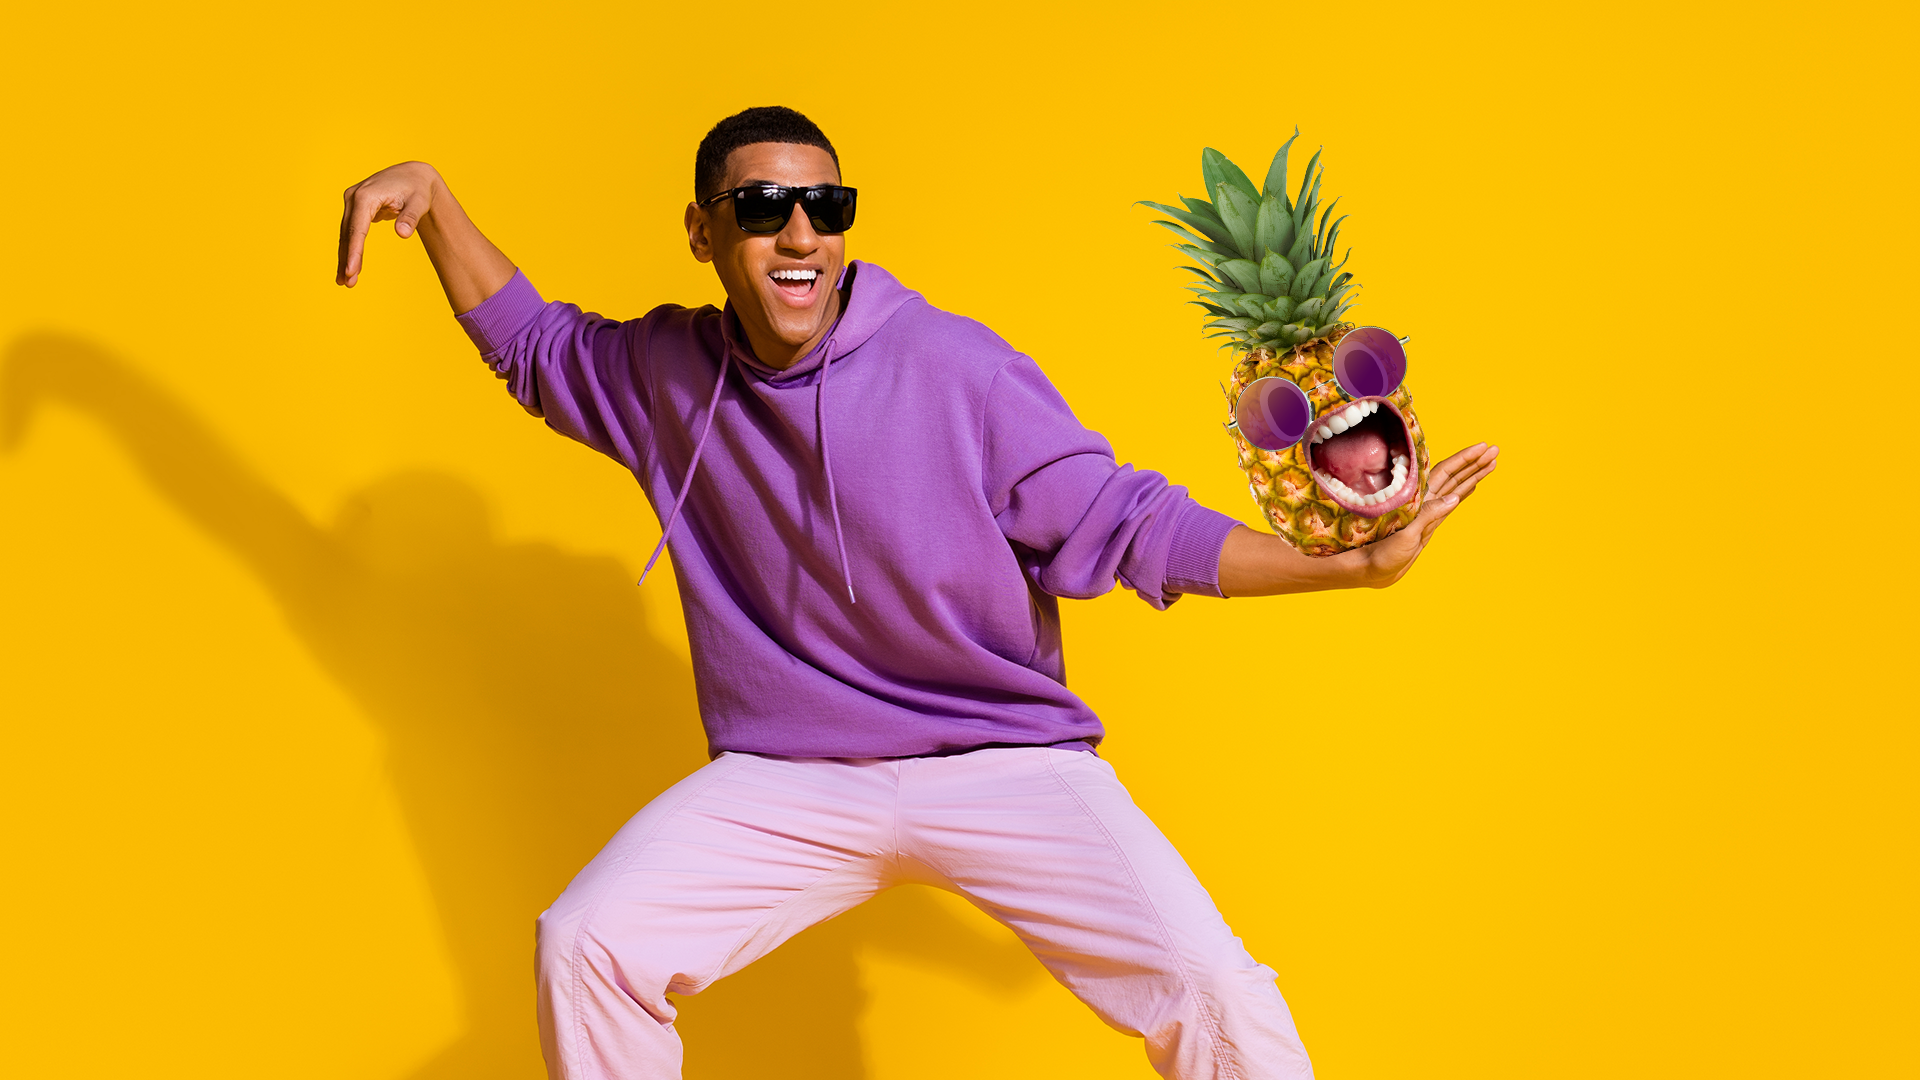 Man and screaming pineapple dancing